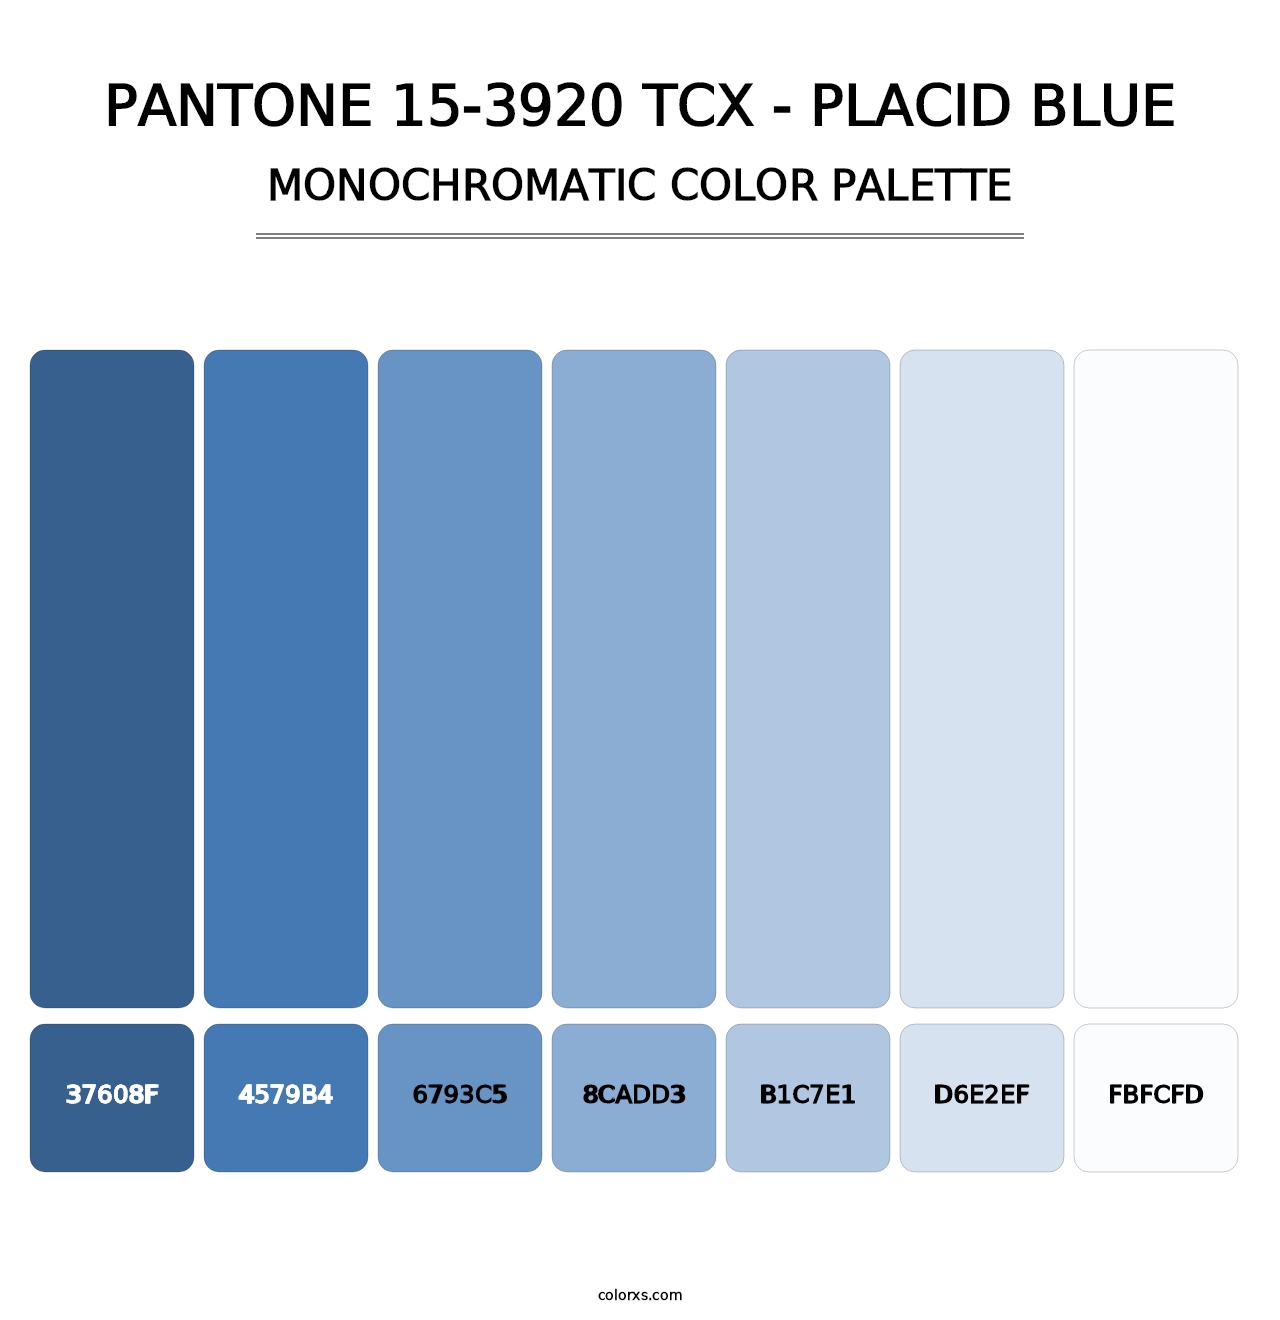 PANTONE 15-3920 TCX - Placid Blue - Monochromatic Color Palette